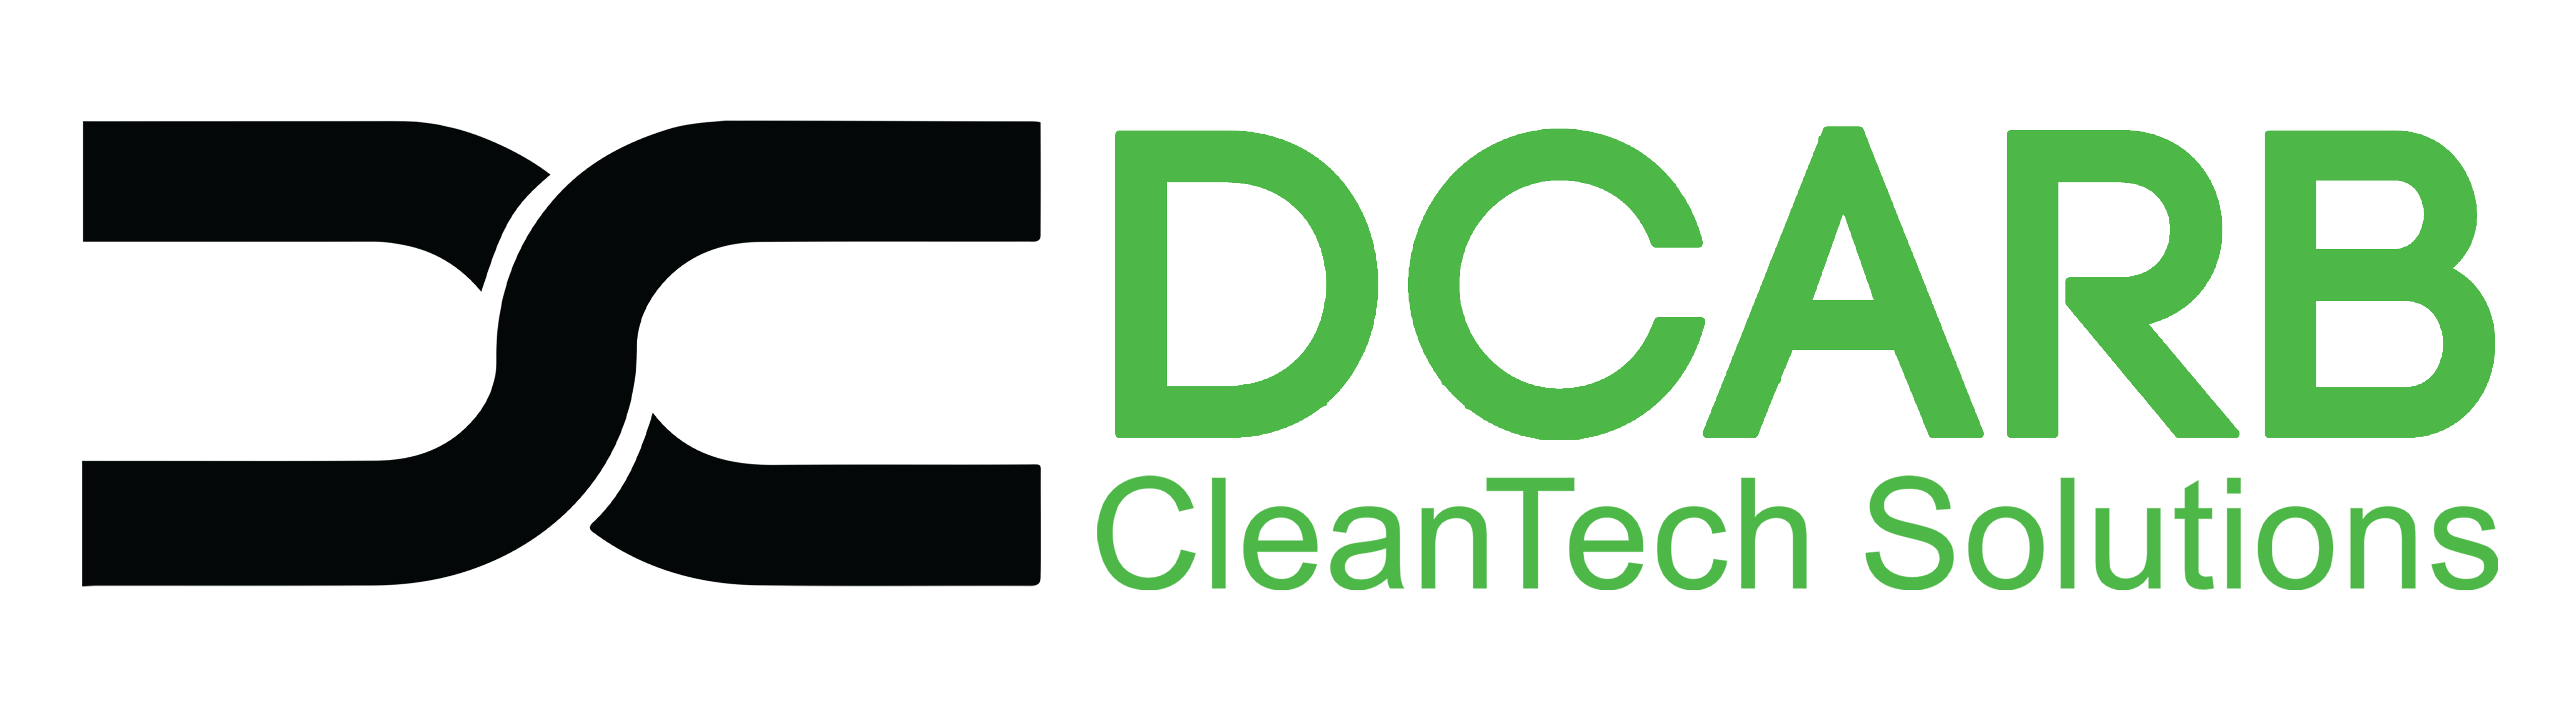 Dcarb- cleantech solutions